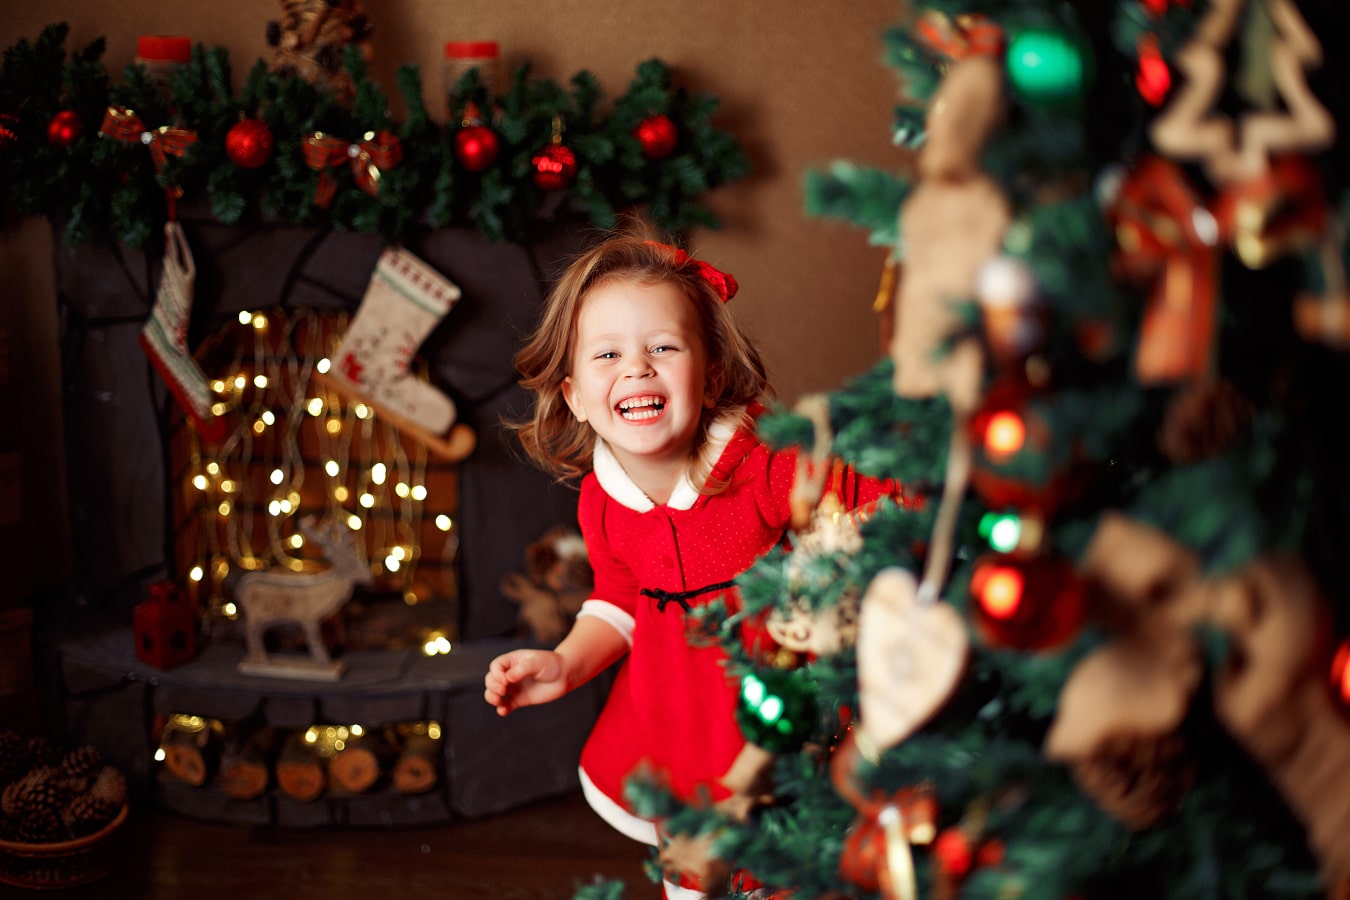 La ragazza allegra con un vestito rosso guarda nascosta dietro l'albero di Natale, ride ed è molto felice.